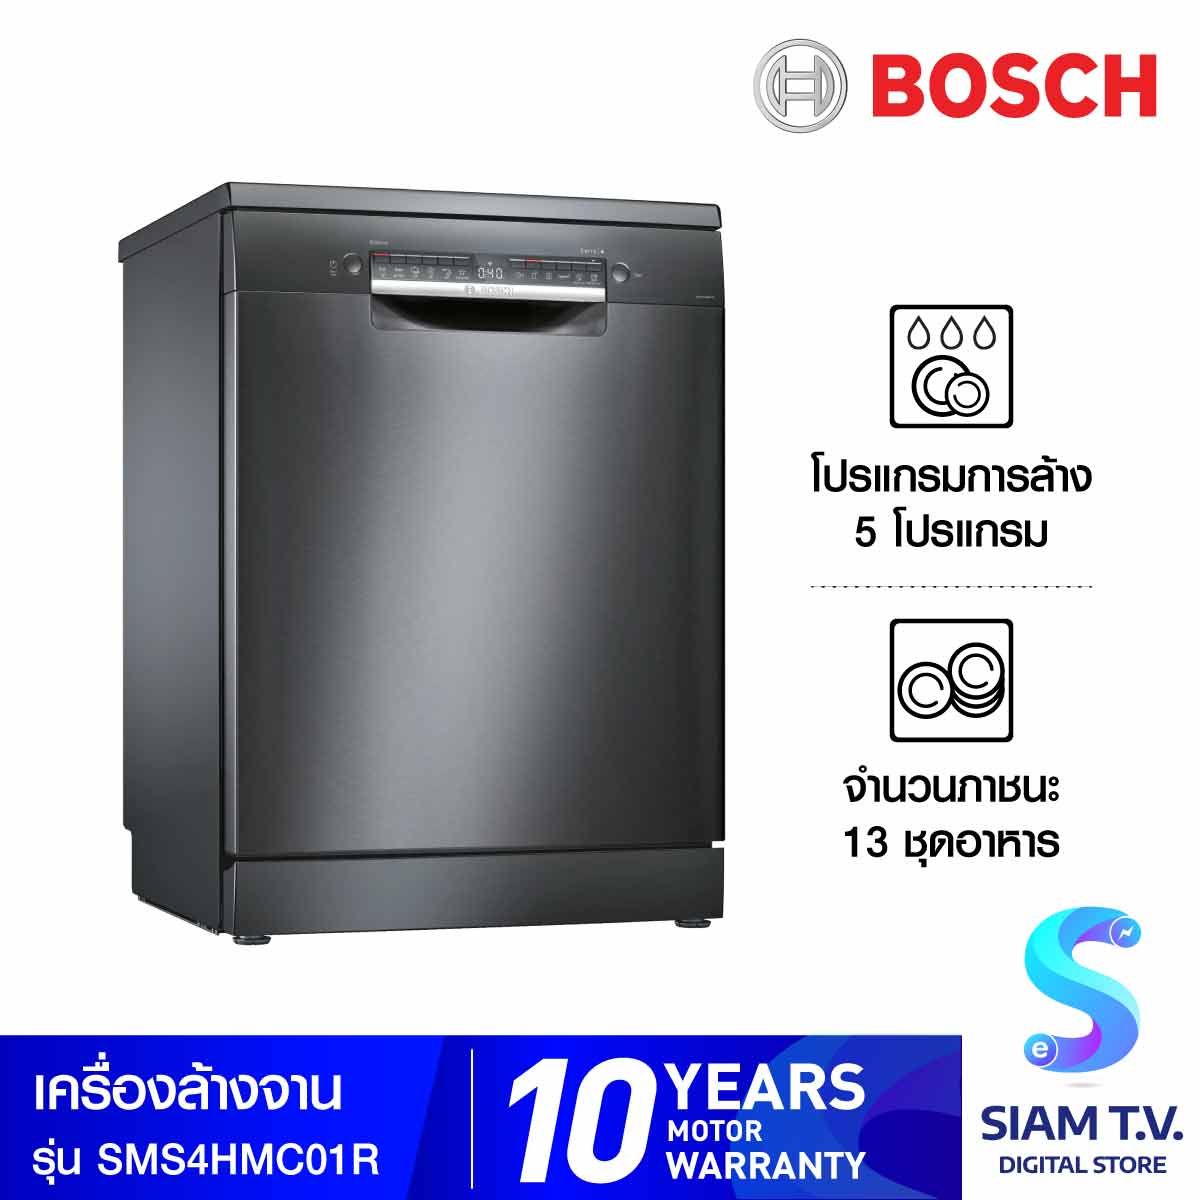 BOSCH Serie 4 เครื่องล้างจานแบบตั้งพื้น 60 cm Black inox รุ่น SMS4HMC01R